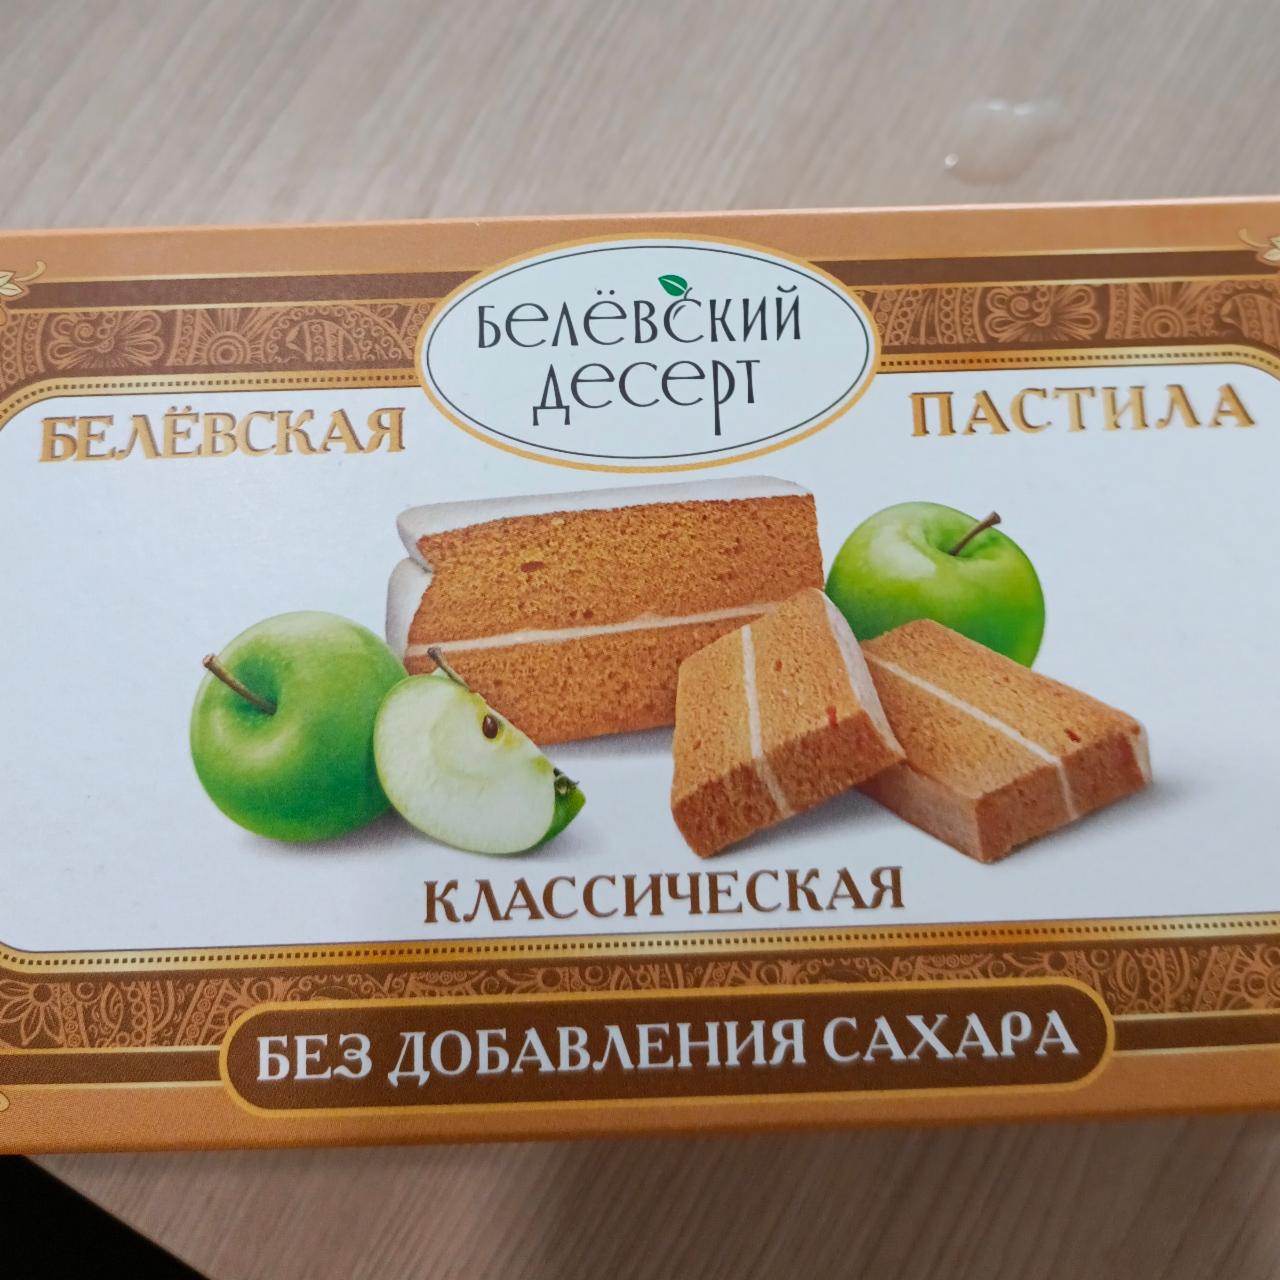 Фото - Беле́вская пастила классическая Бедевский десерт